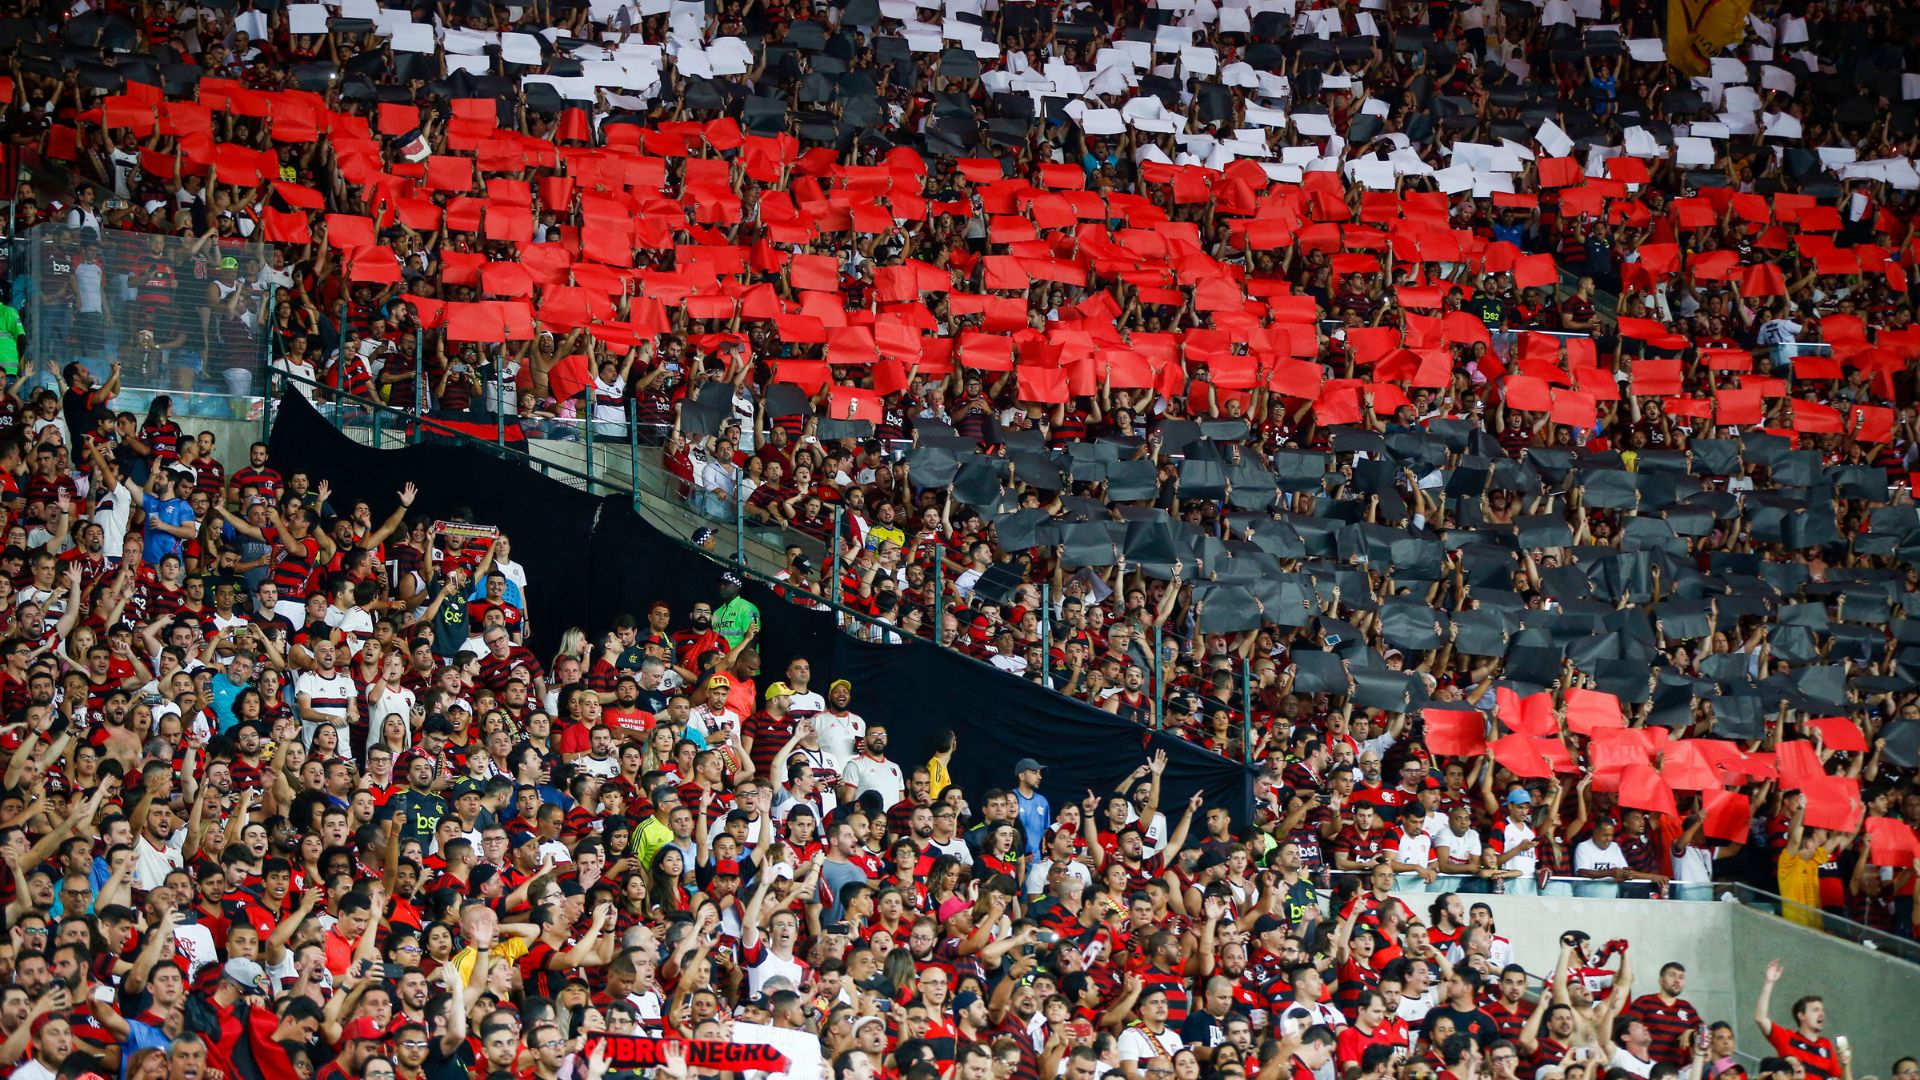 Torcida do Flamengo é a maior do Brasil, diz estudo